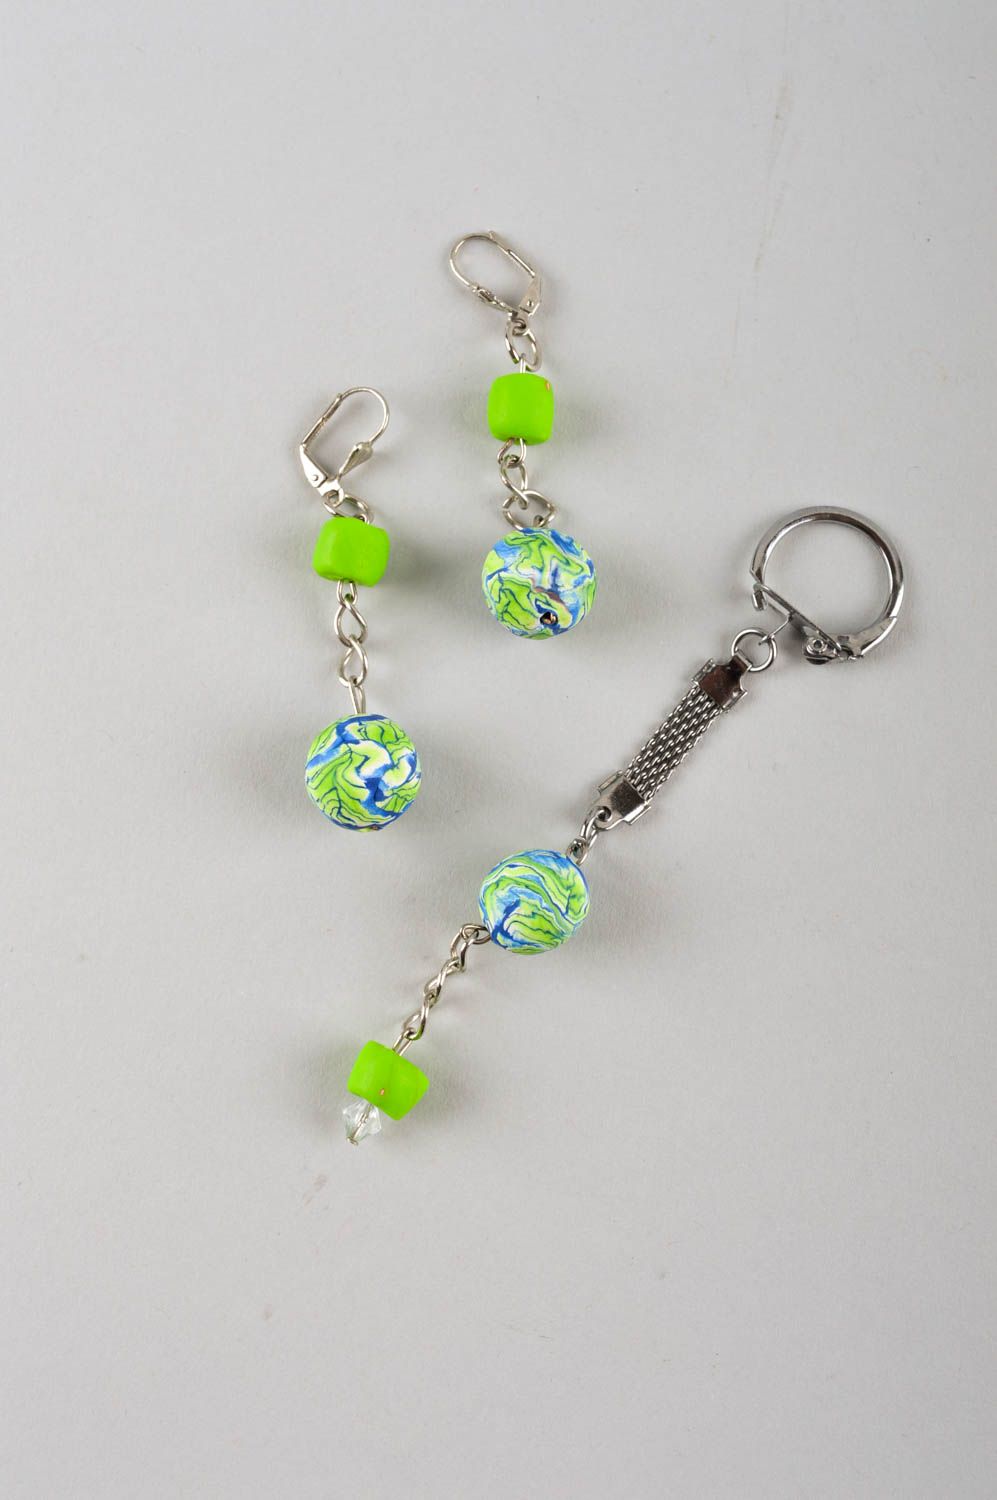 Handmade jewelry set wrist bracelet pendant necklace dangling earrings kechain photo 5